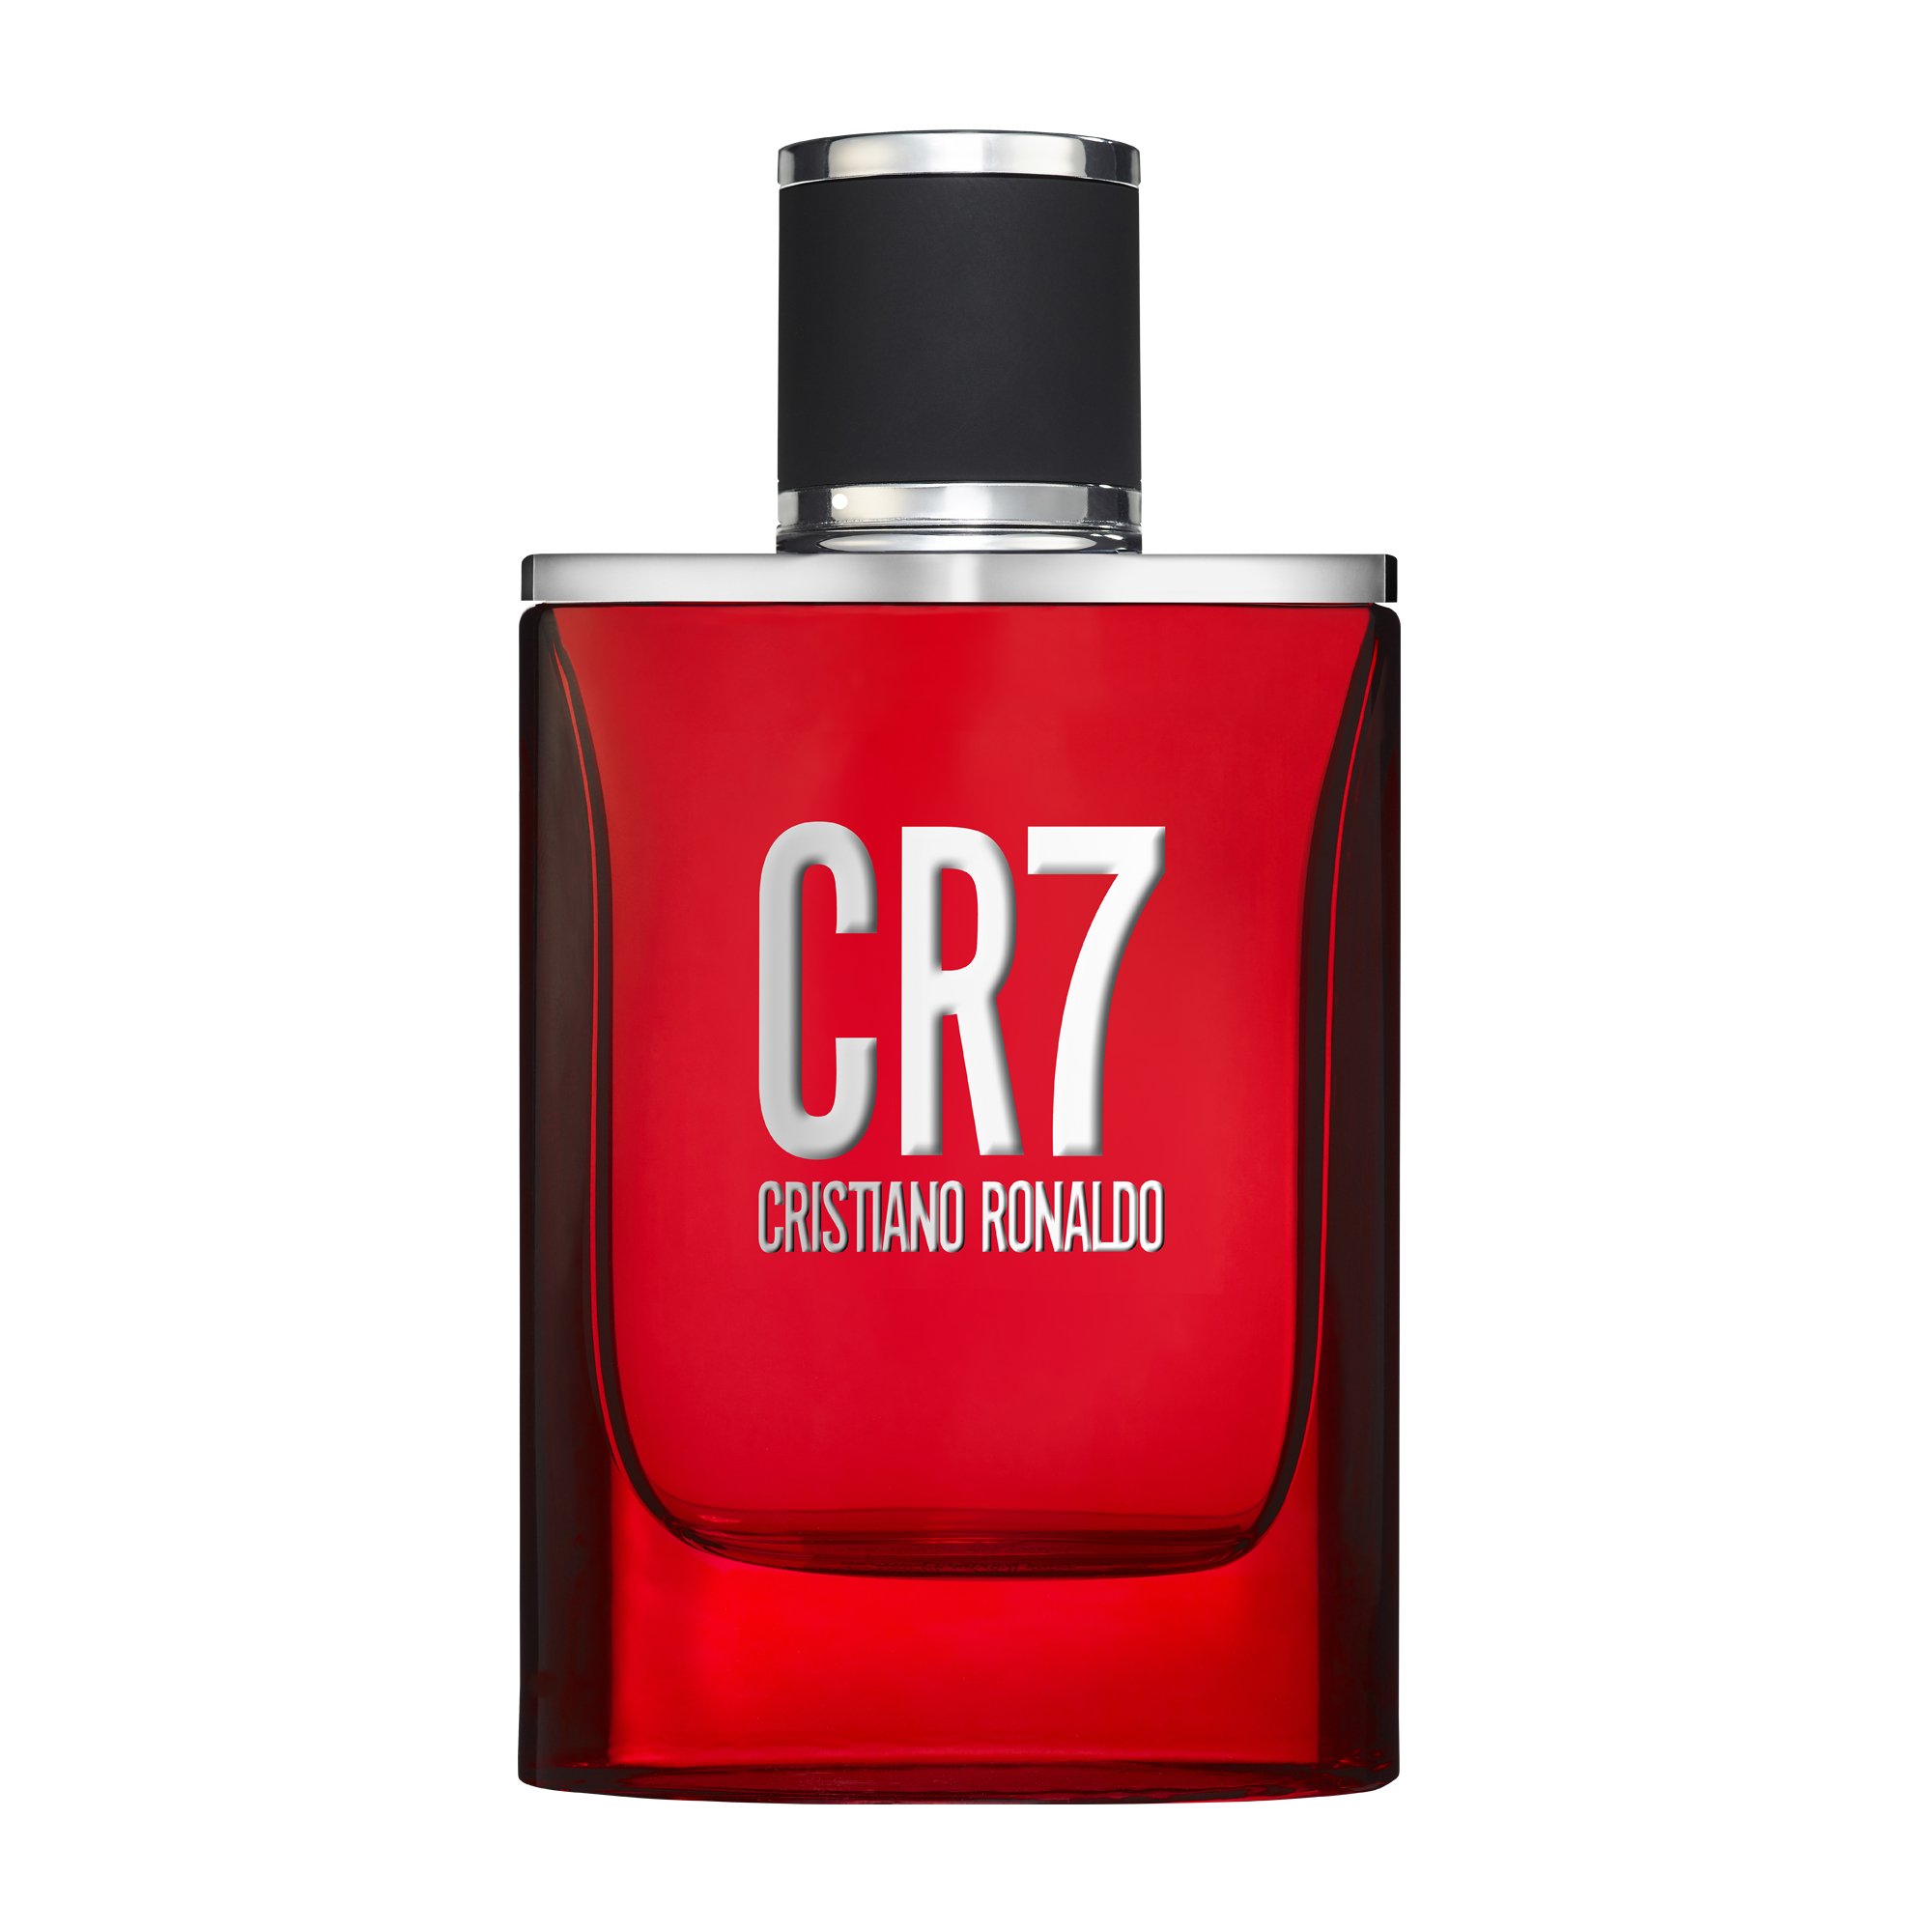 Cristiano Ronaldo - CR7 EDT - 30 ml - Skjønnhet